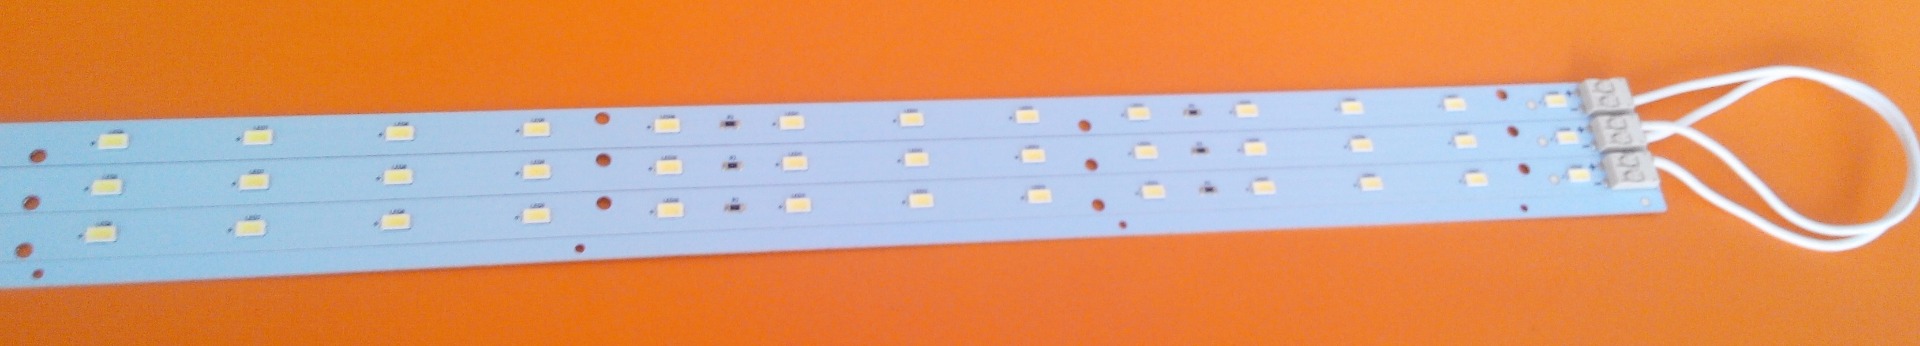 Светодиодные линейки 50 см SMD 5630 SEOUL для замены ламп в растровых светильниках.